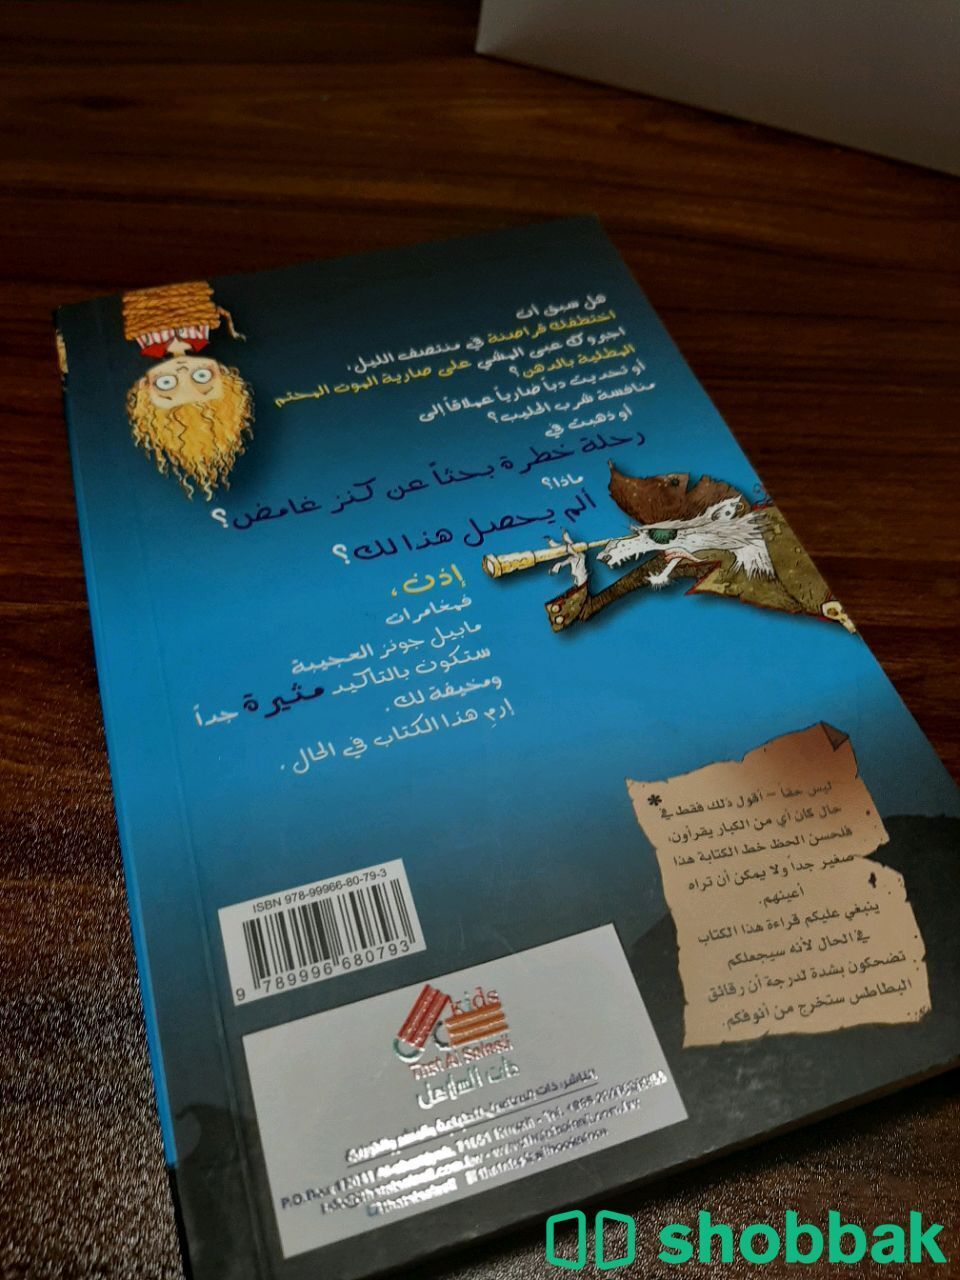 كتاب مغامرات مابيل جونز العجيبة  Shobbak Saudi Arabia